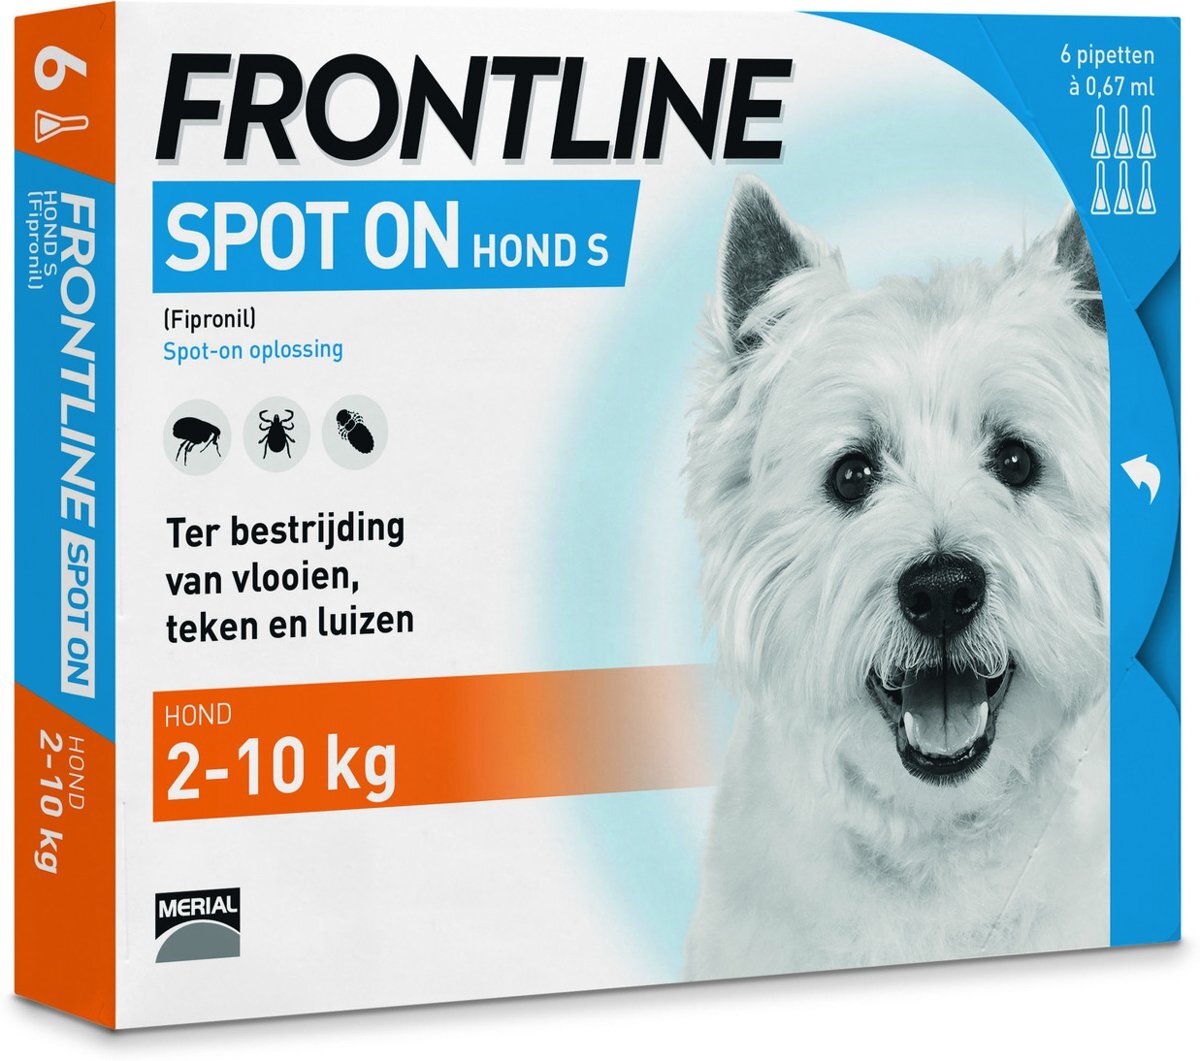 Frontline Spot On S Anti vlooienmiddel Hond 6 pipetten